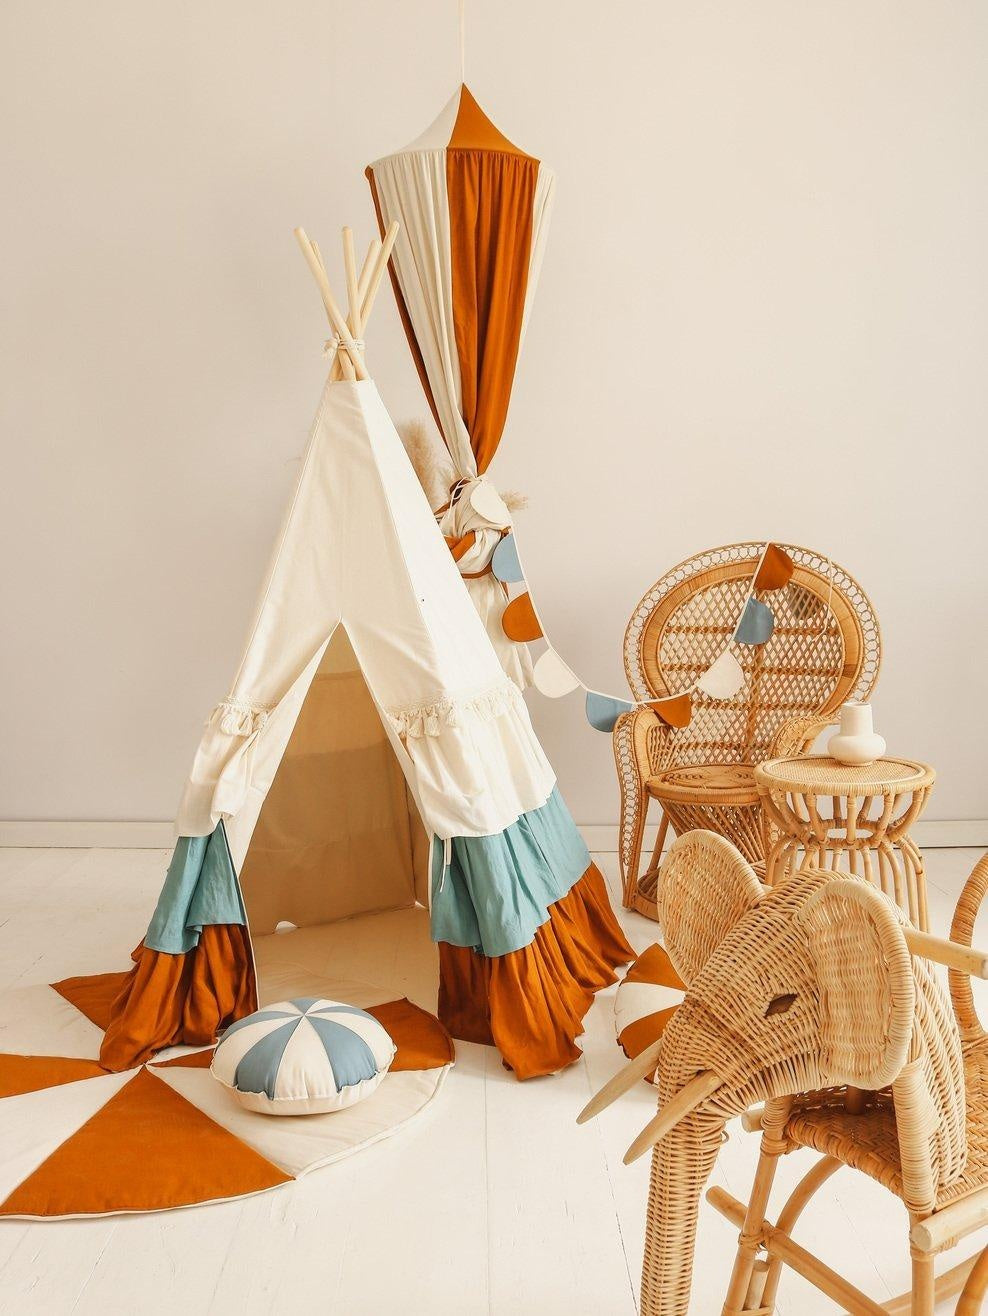 Teepee Tent “Circus” with Frills + "Caramel Candy" Mat Set